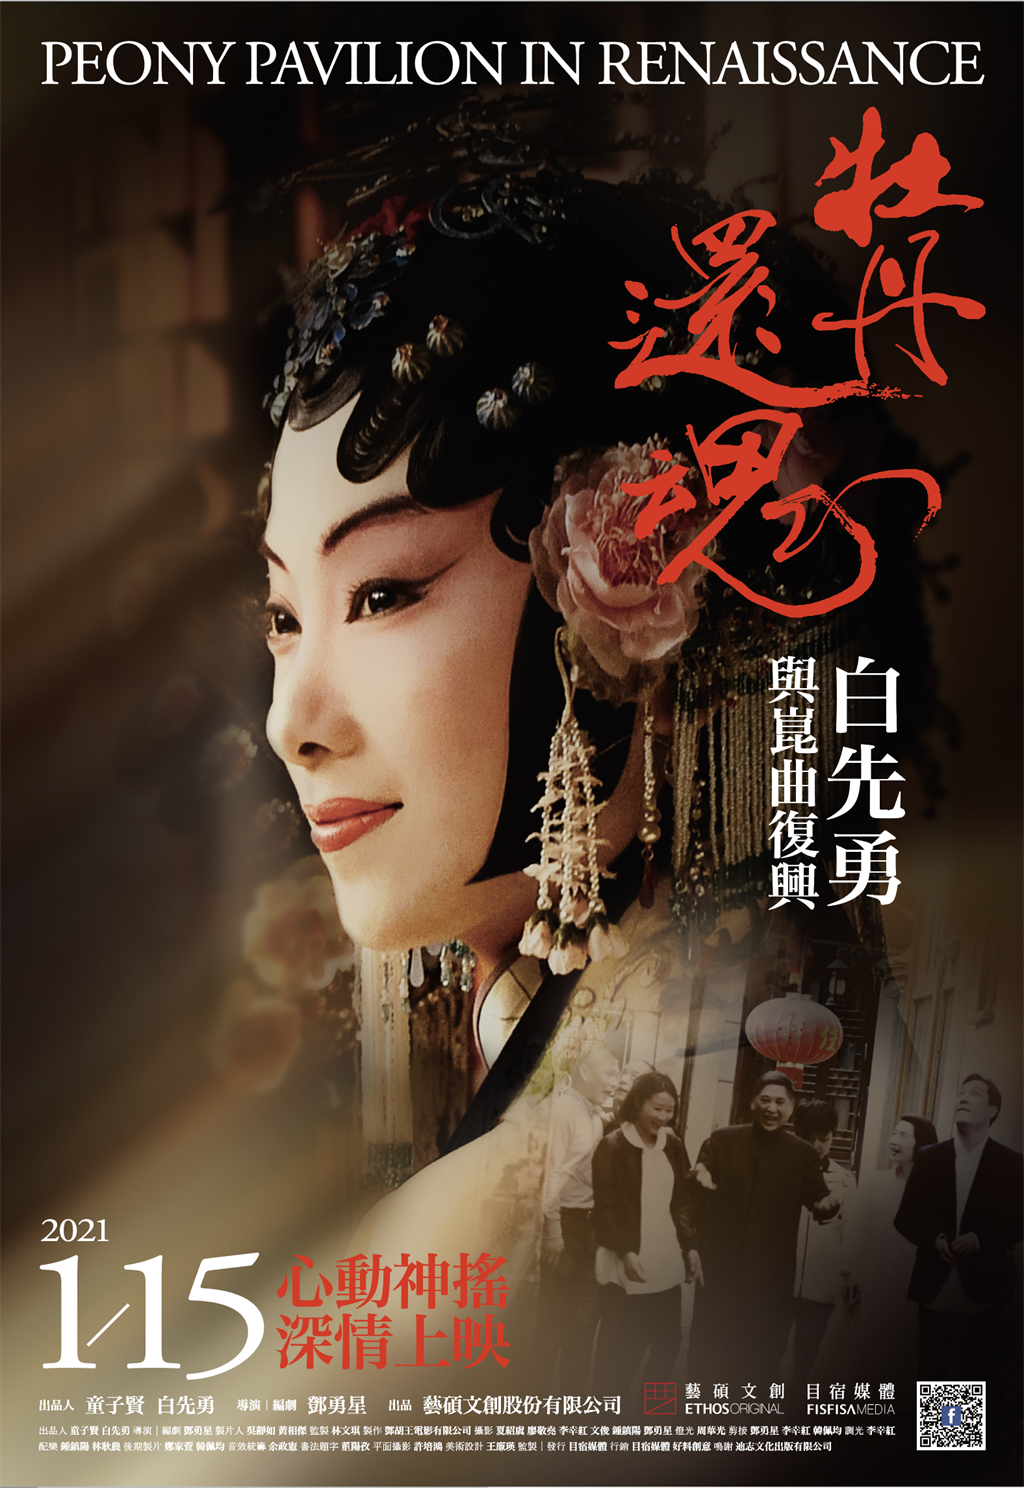 《牡丹還魂－白先勇與崑曲復興》將於明年1月15日上映。